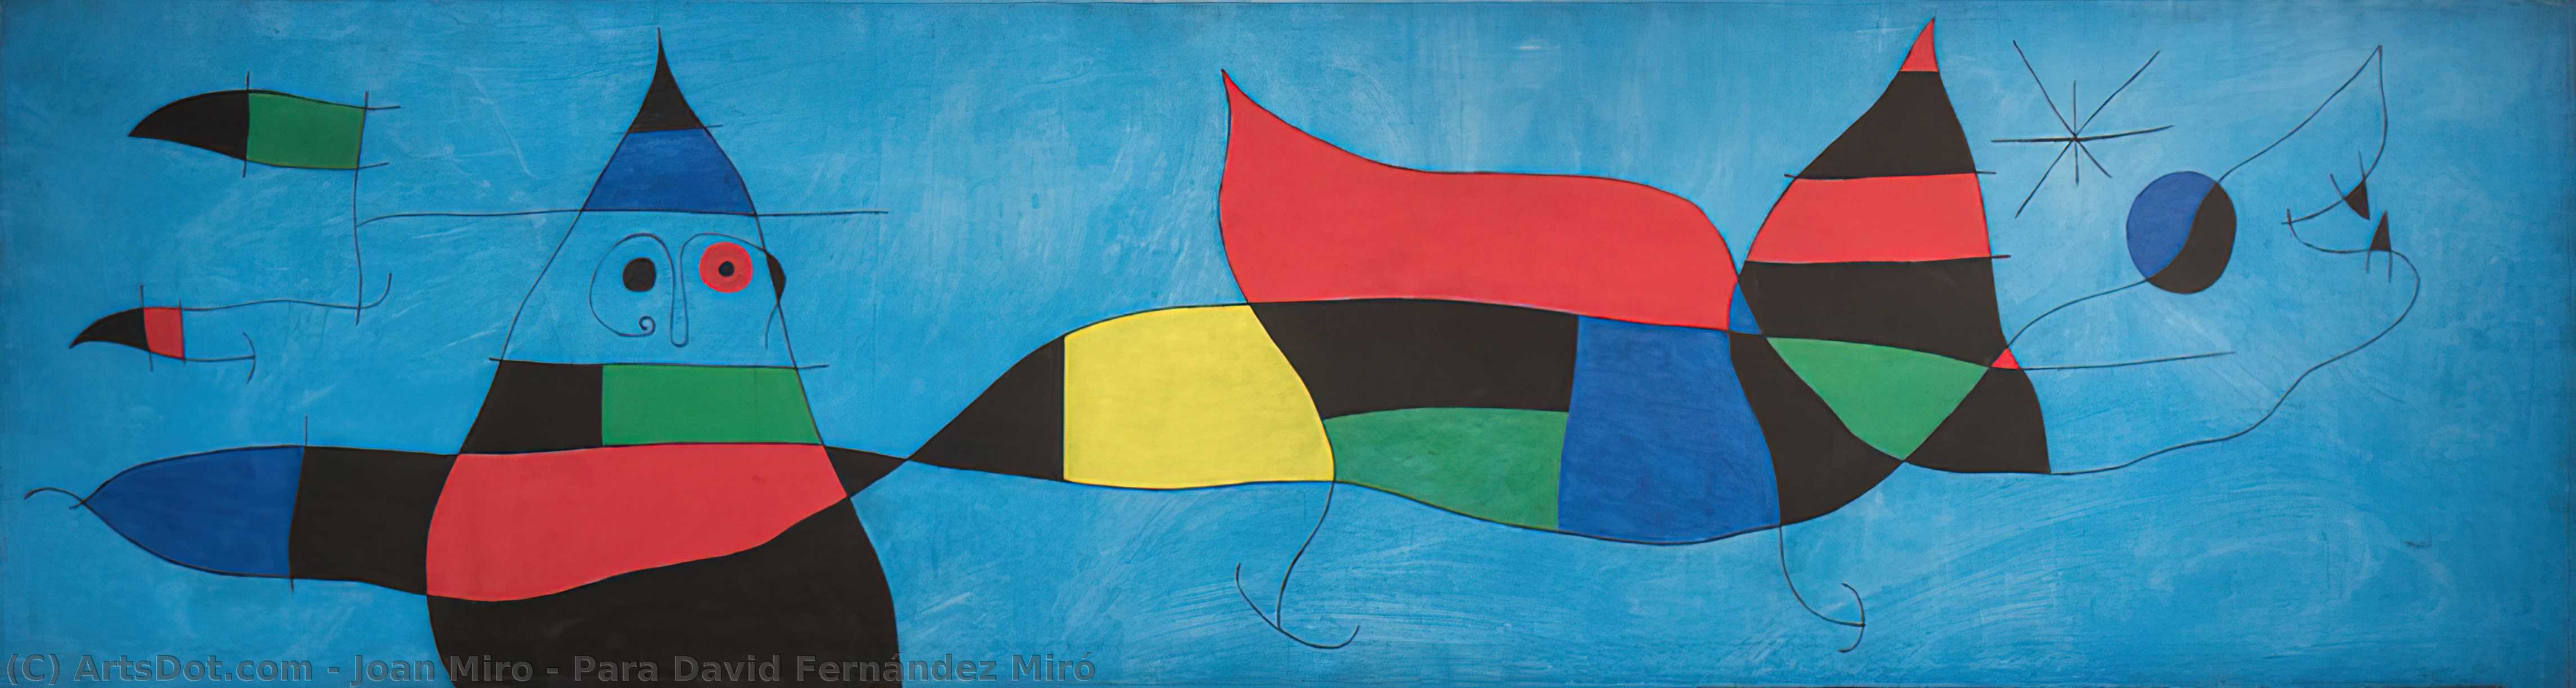 Wikioo.org - Bách khoa toàn thư về mỹ thuật - Vẽ tranh, Tác phẩm nghệ thuật Joan Miro - Para David Fernández Miró